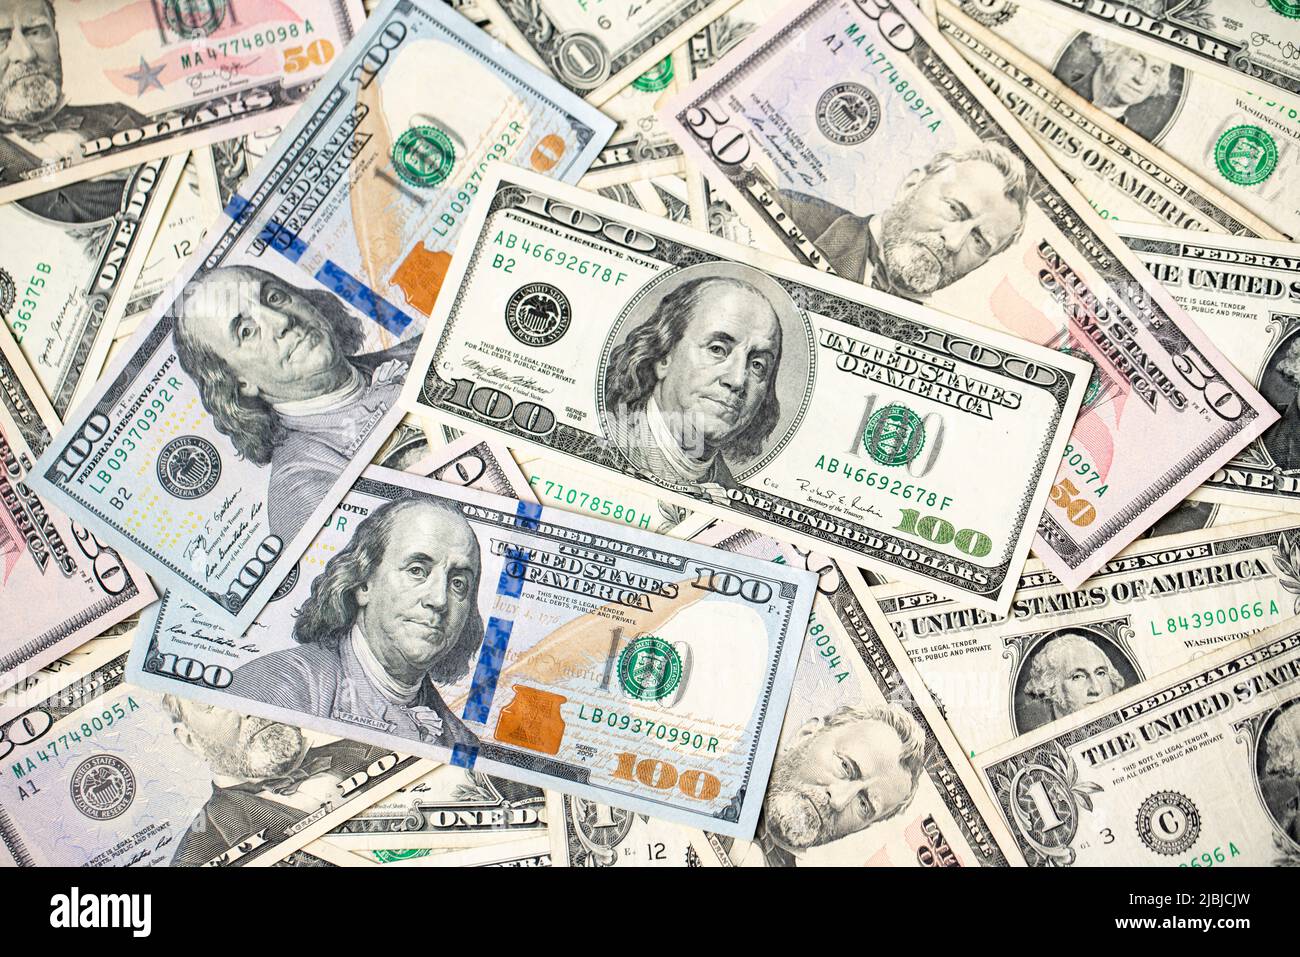 Alte und neue 100-Dollar-Scheine und Banknoten, die Rückseite  Stockfotografie - Alamy